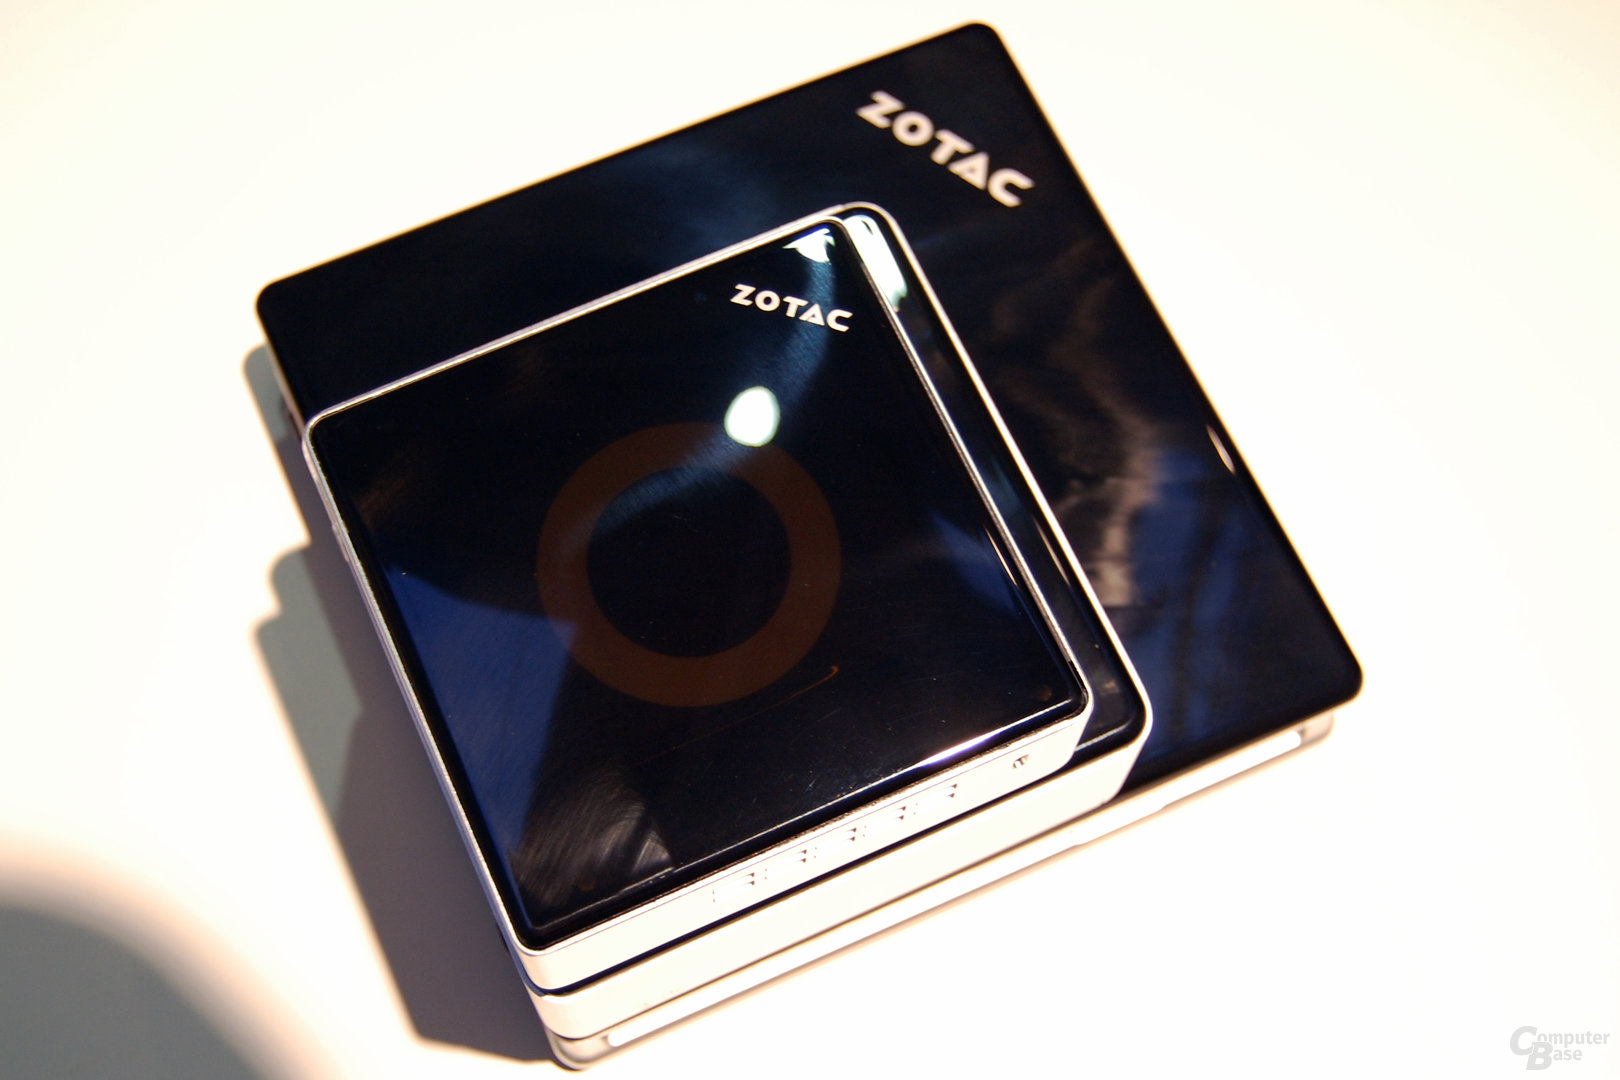 Neue ZBox im Verlgeich zur Zbox nano und Zbox